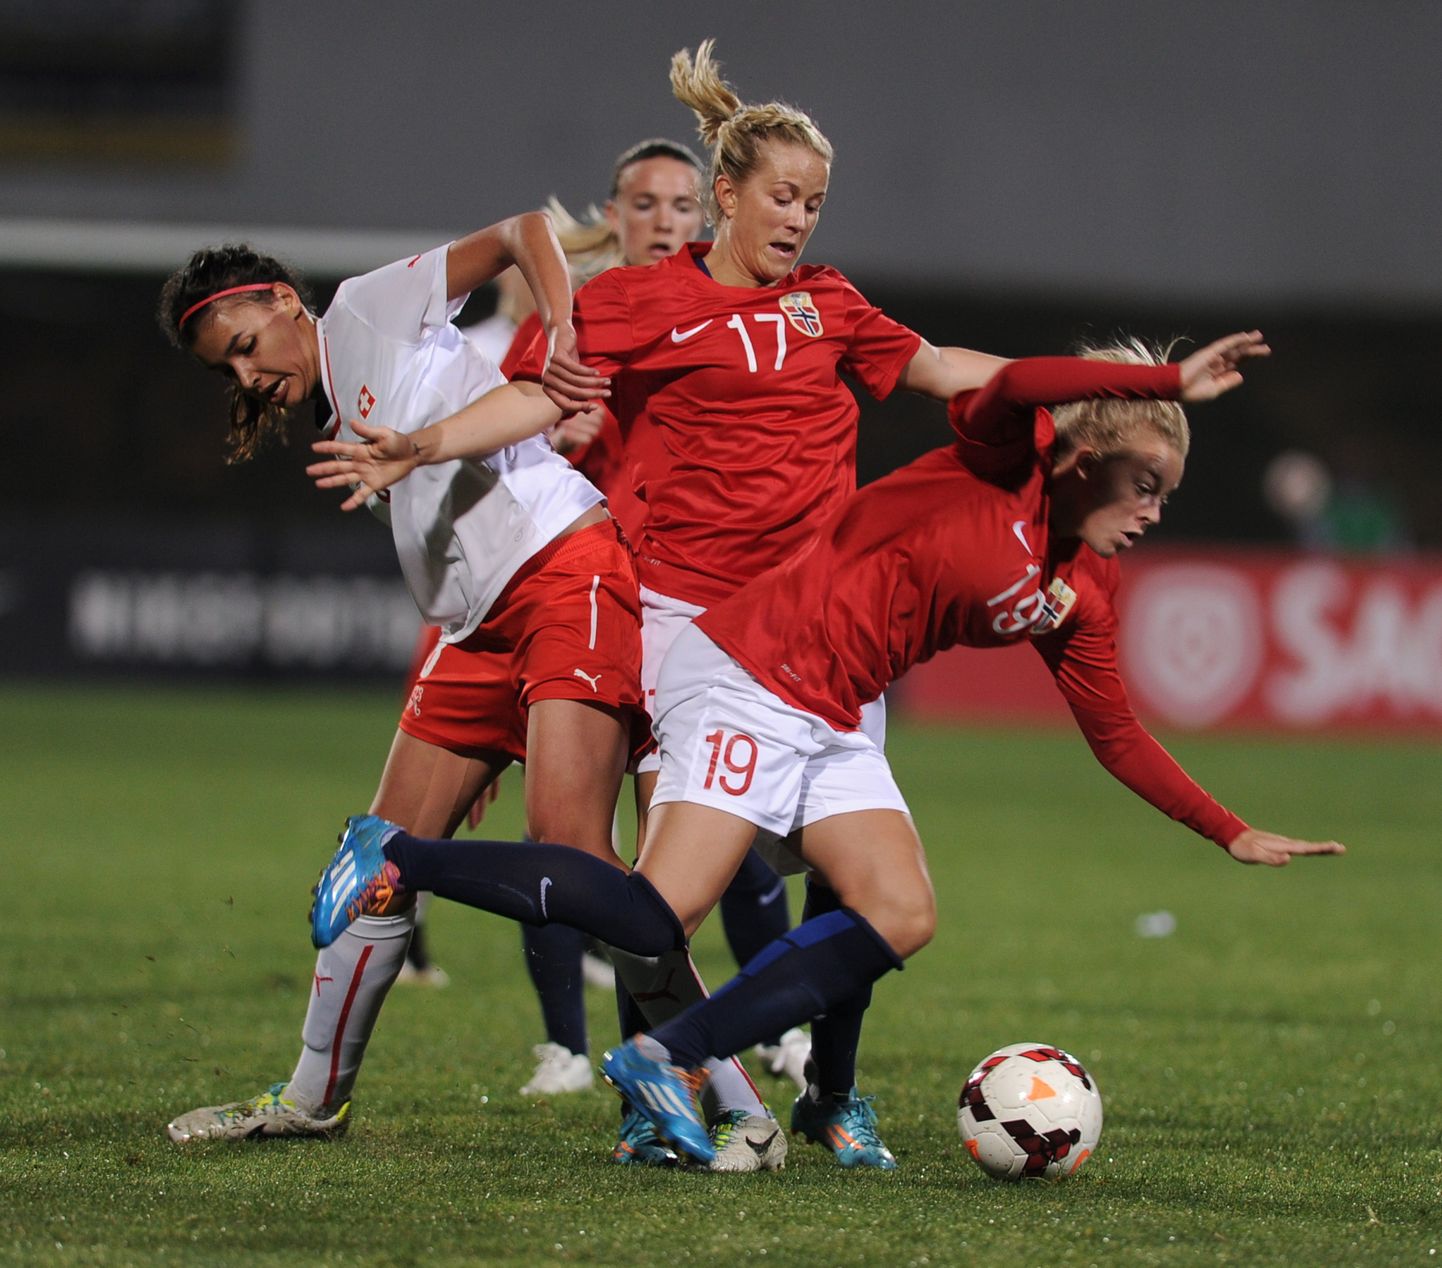 Момент матча между женскими сборными Швейцарии и Норвегии.